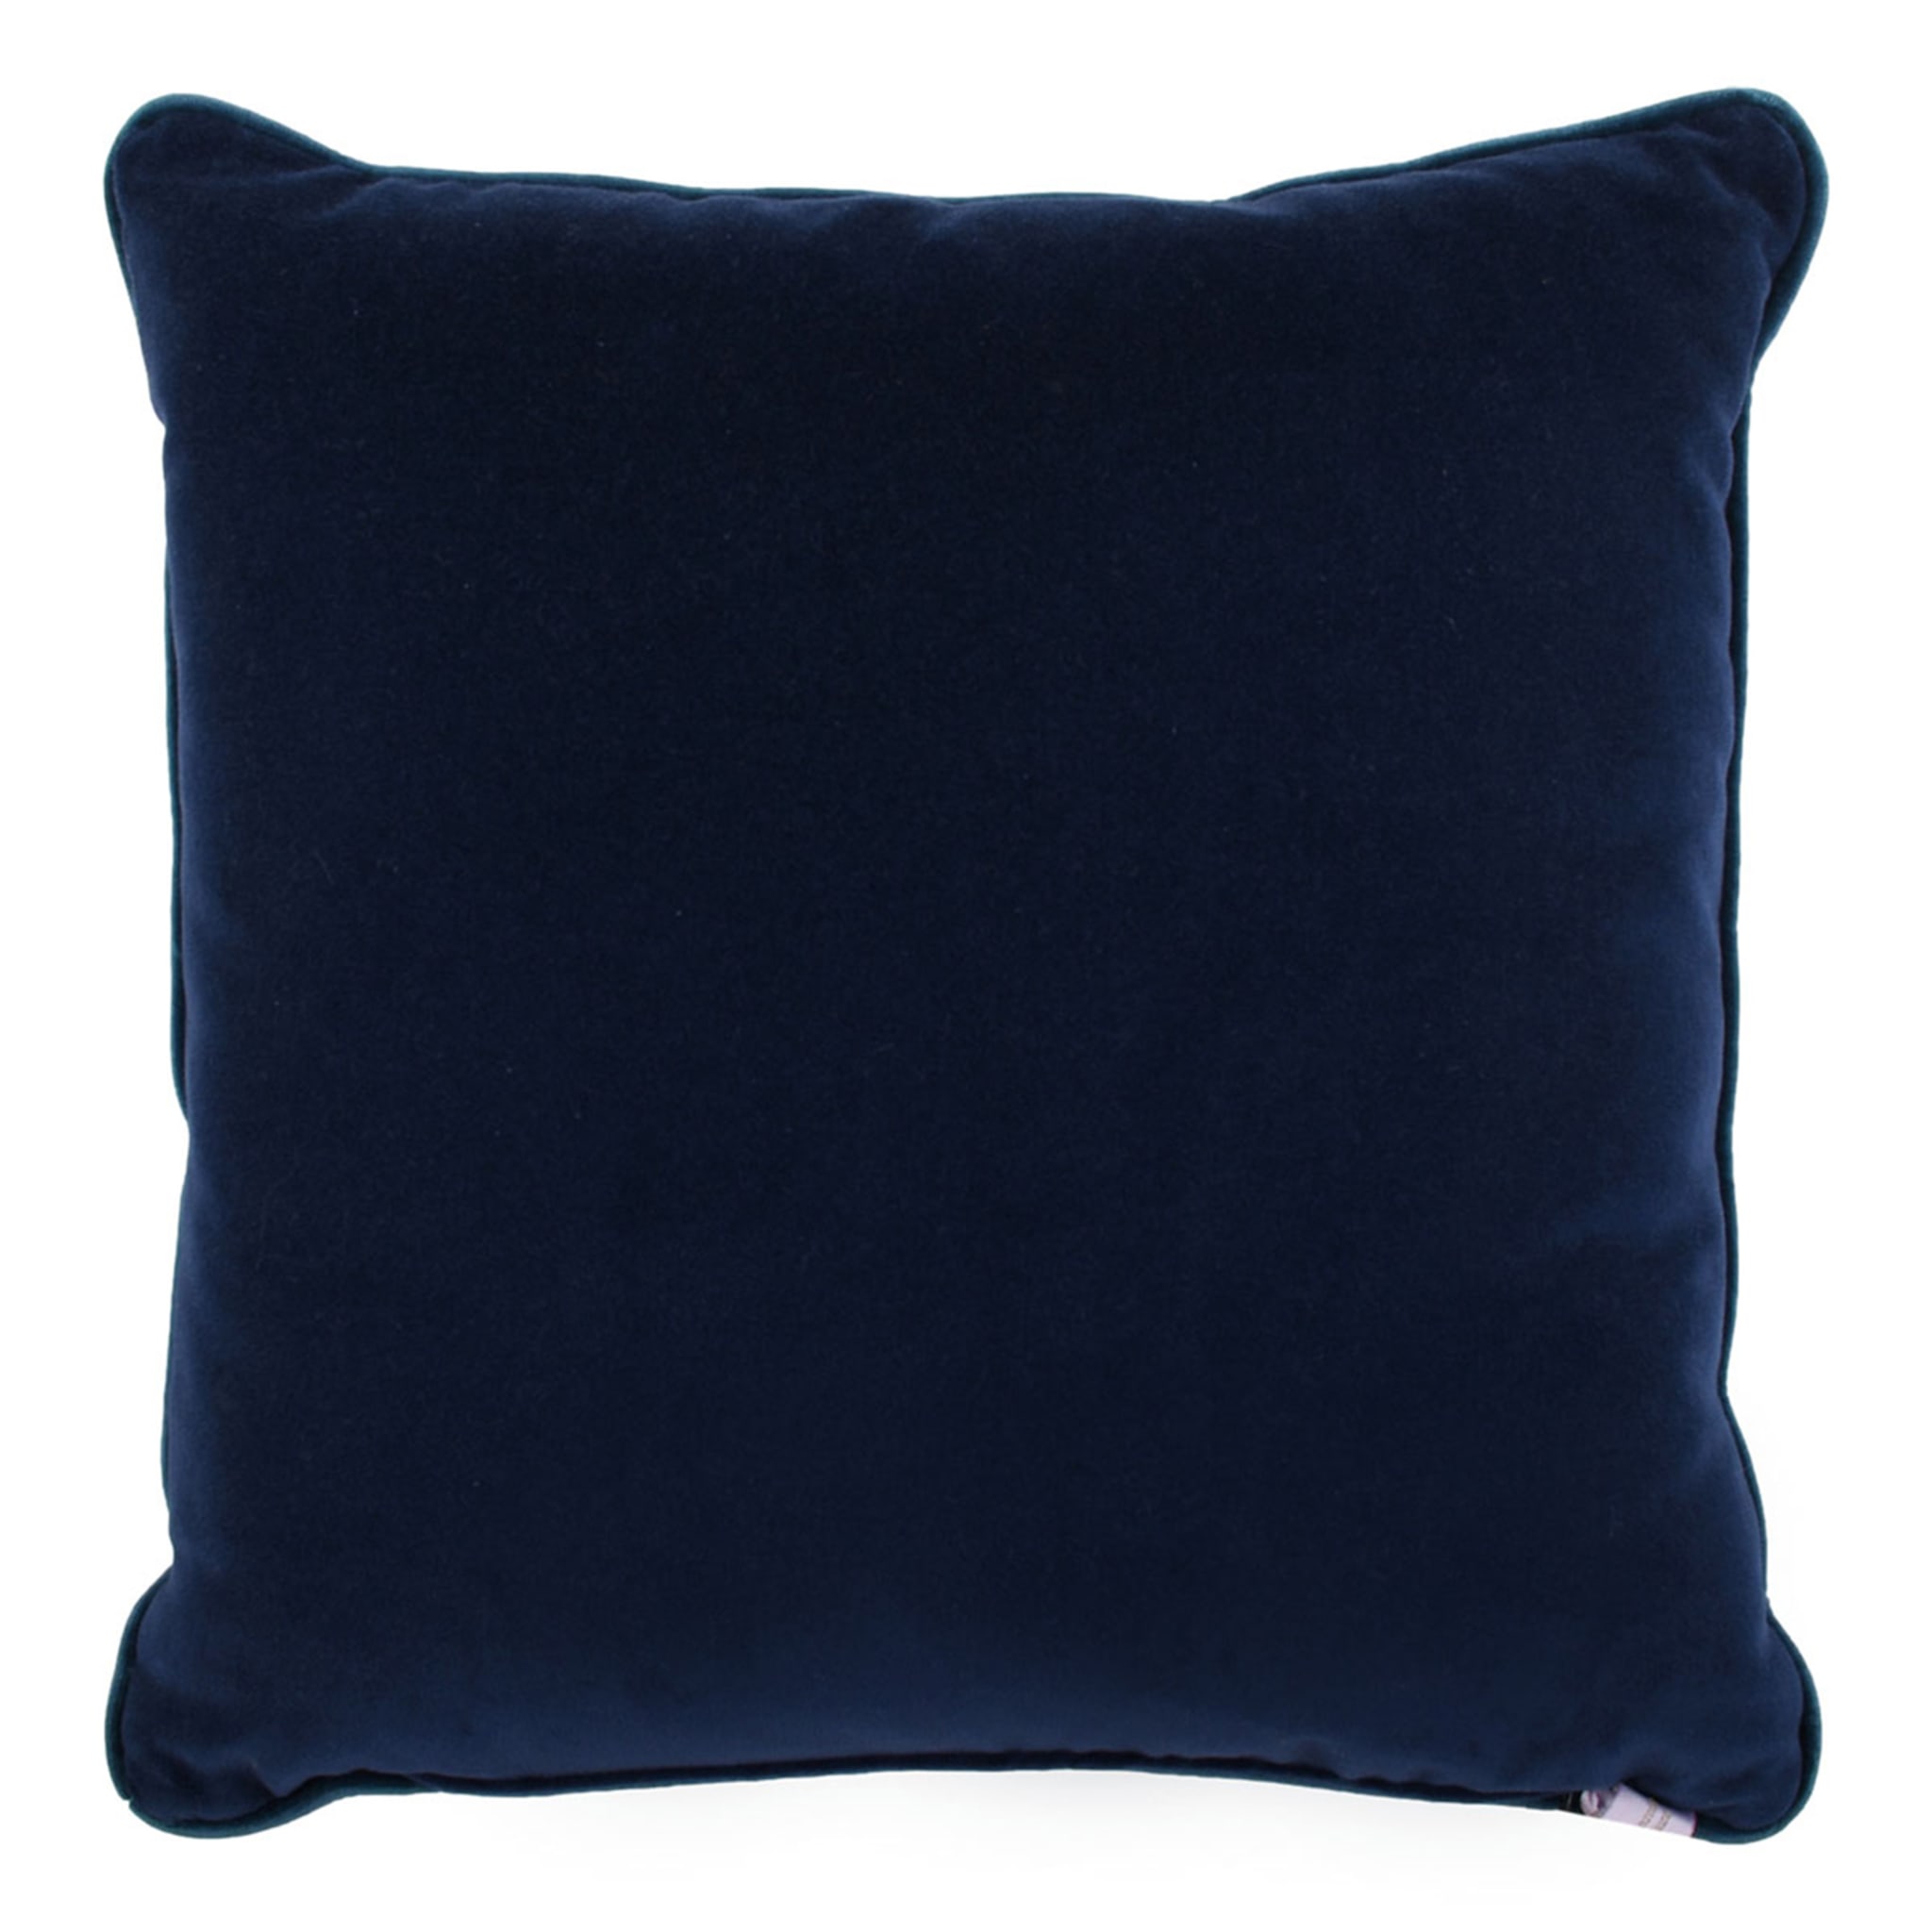 Blue Carrè Cushion in Relief jacquard fabric - Alternative view 1